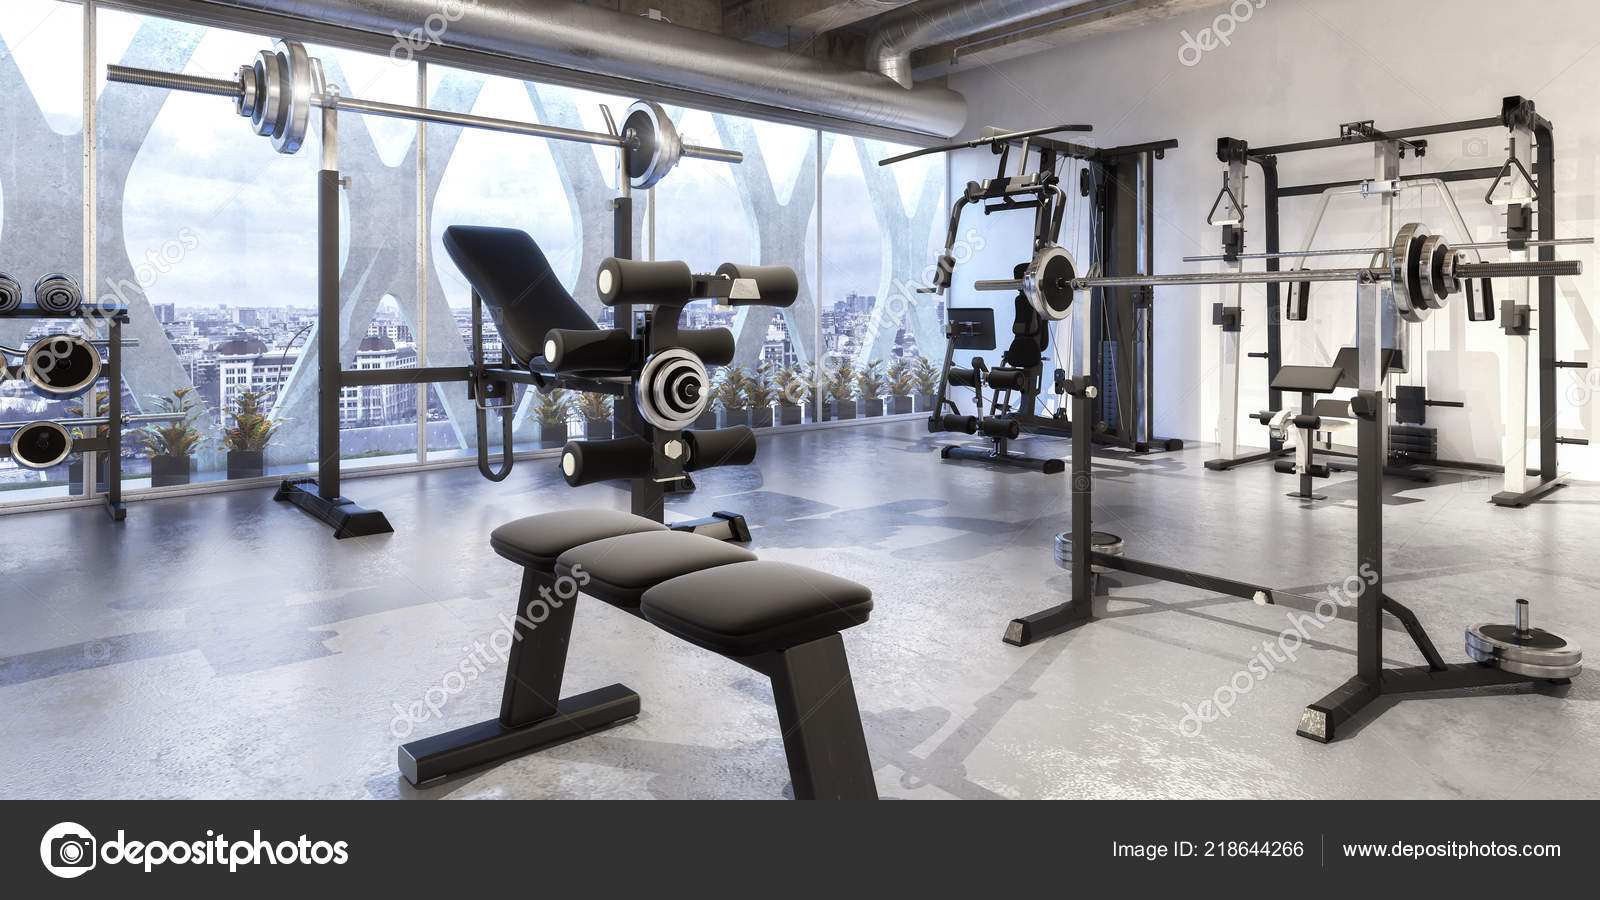 Weights Training Equipment Panoramic Visualization Stock Photo by  ©marcosborne 218644266